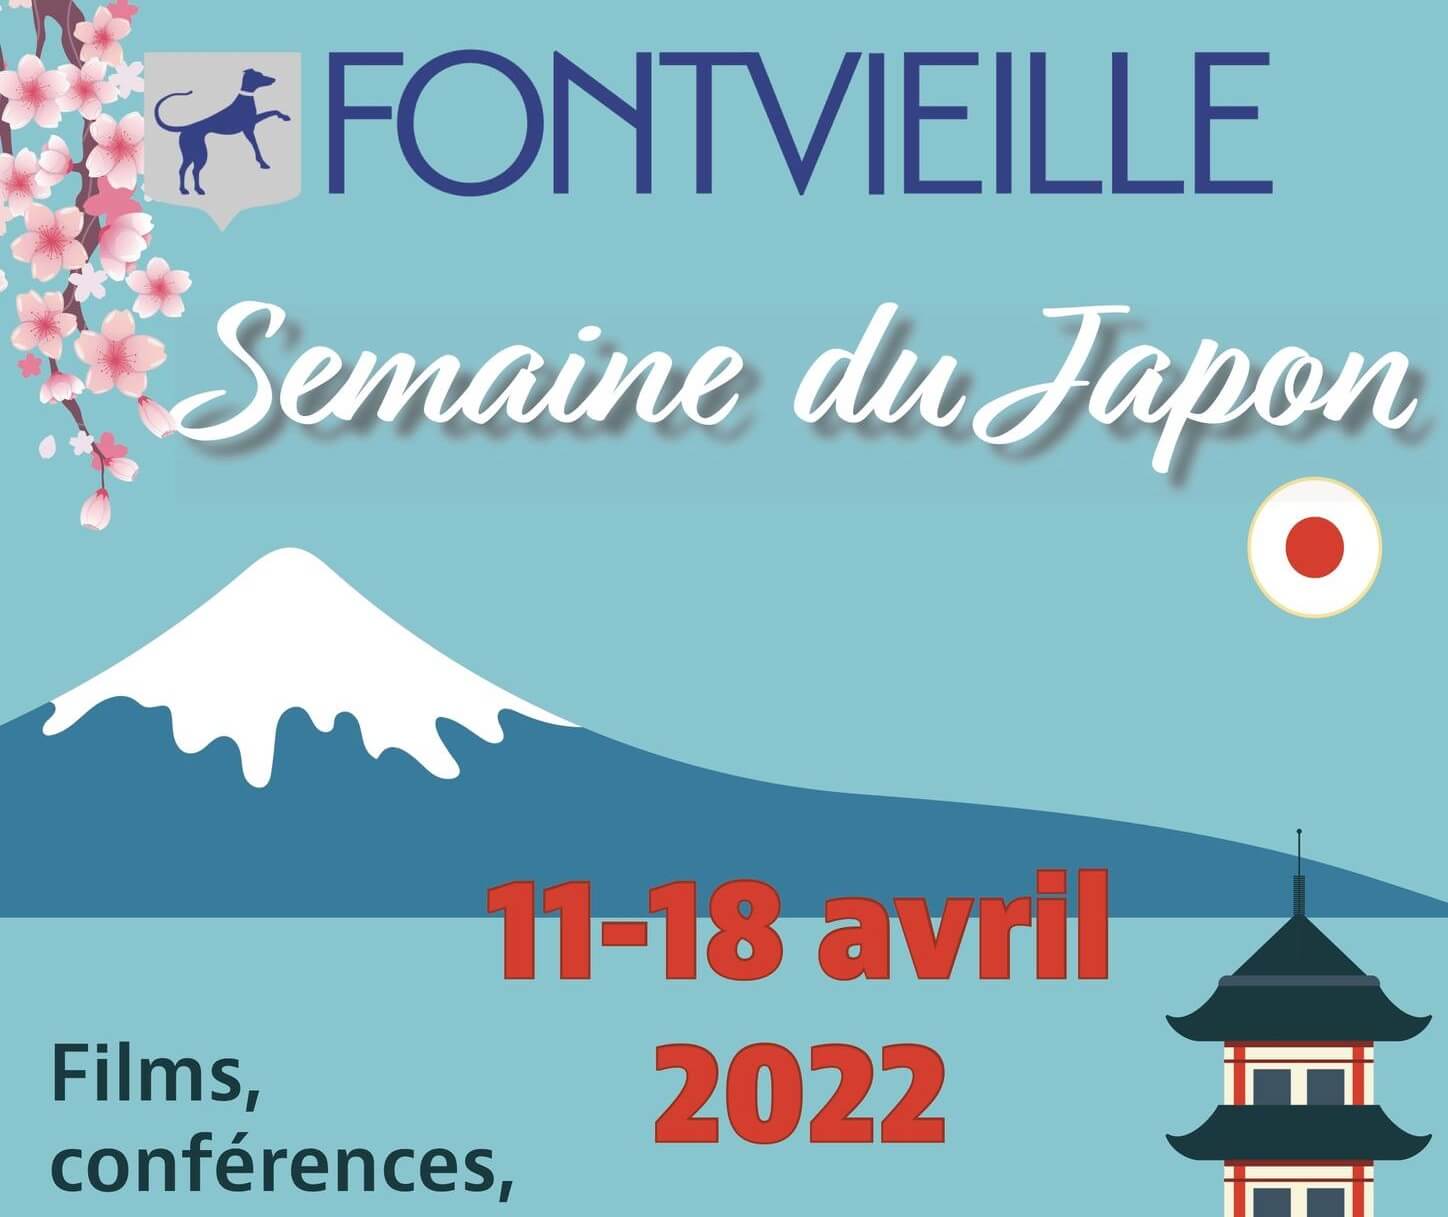 Semaine du Japon 2022 à Fontvieille Alpilles